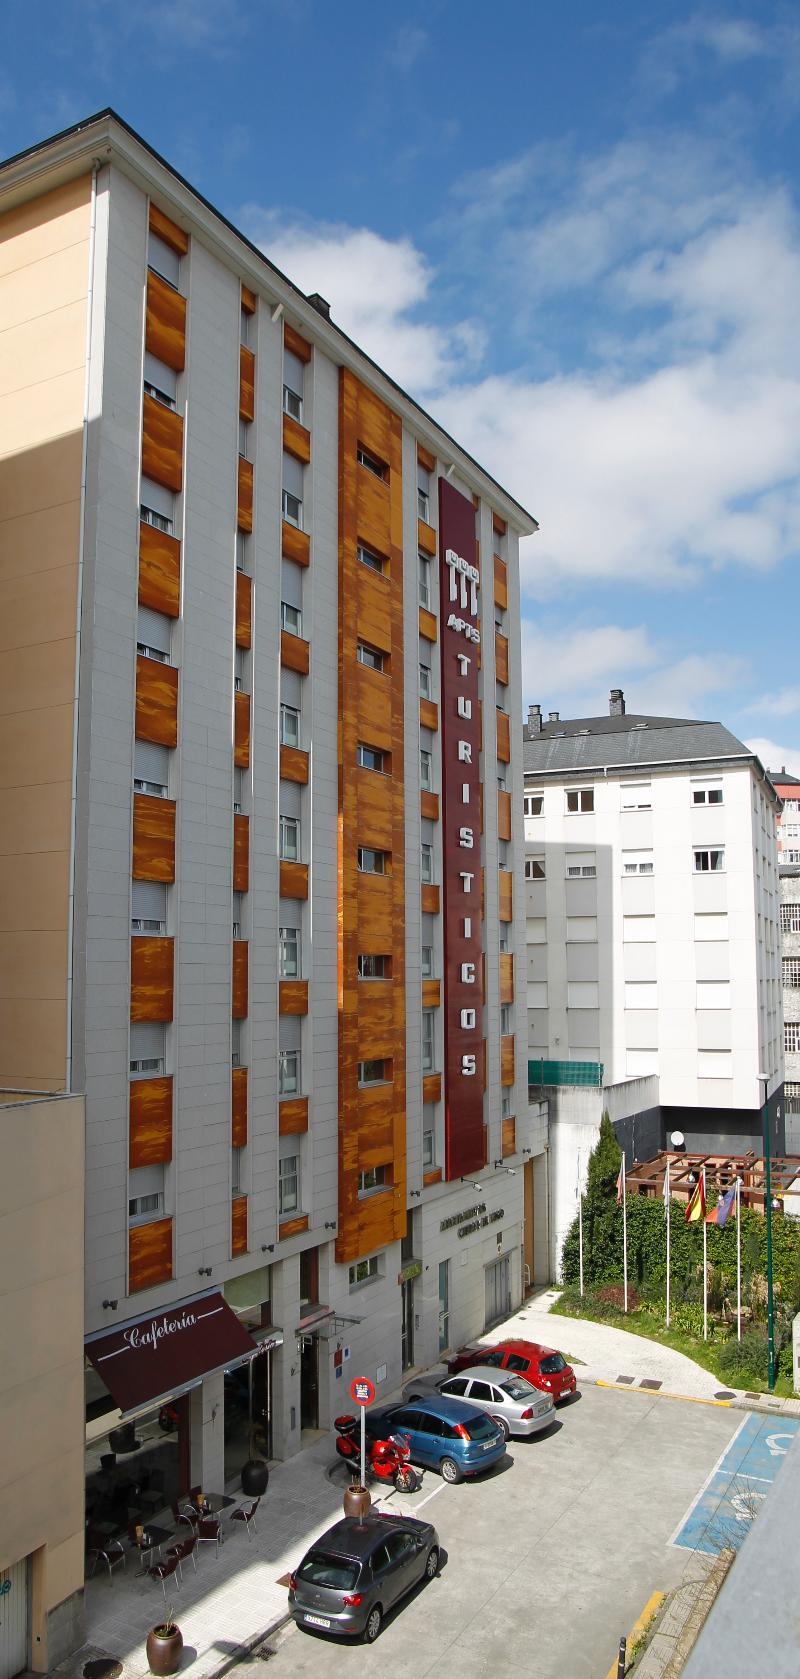 Imagen de alojamiento Ciudad de Lugo